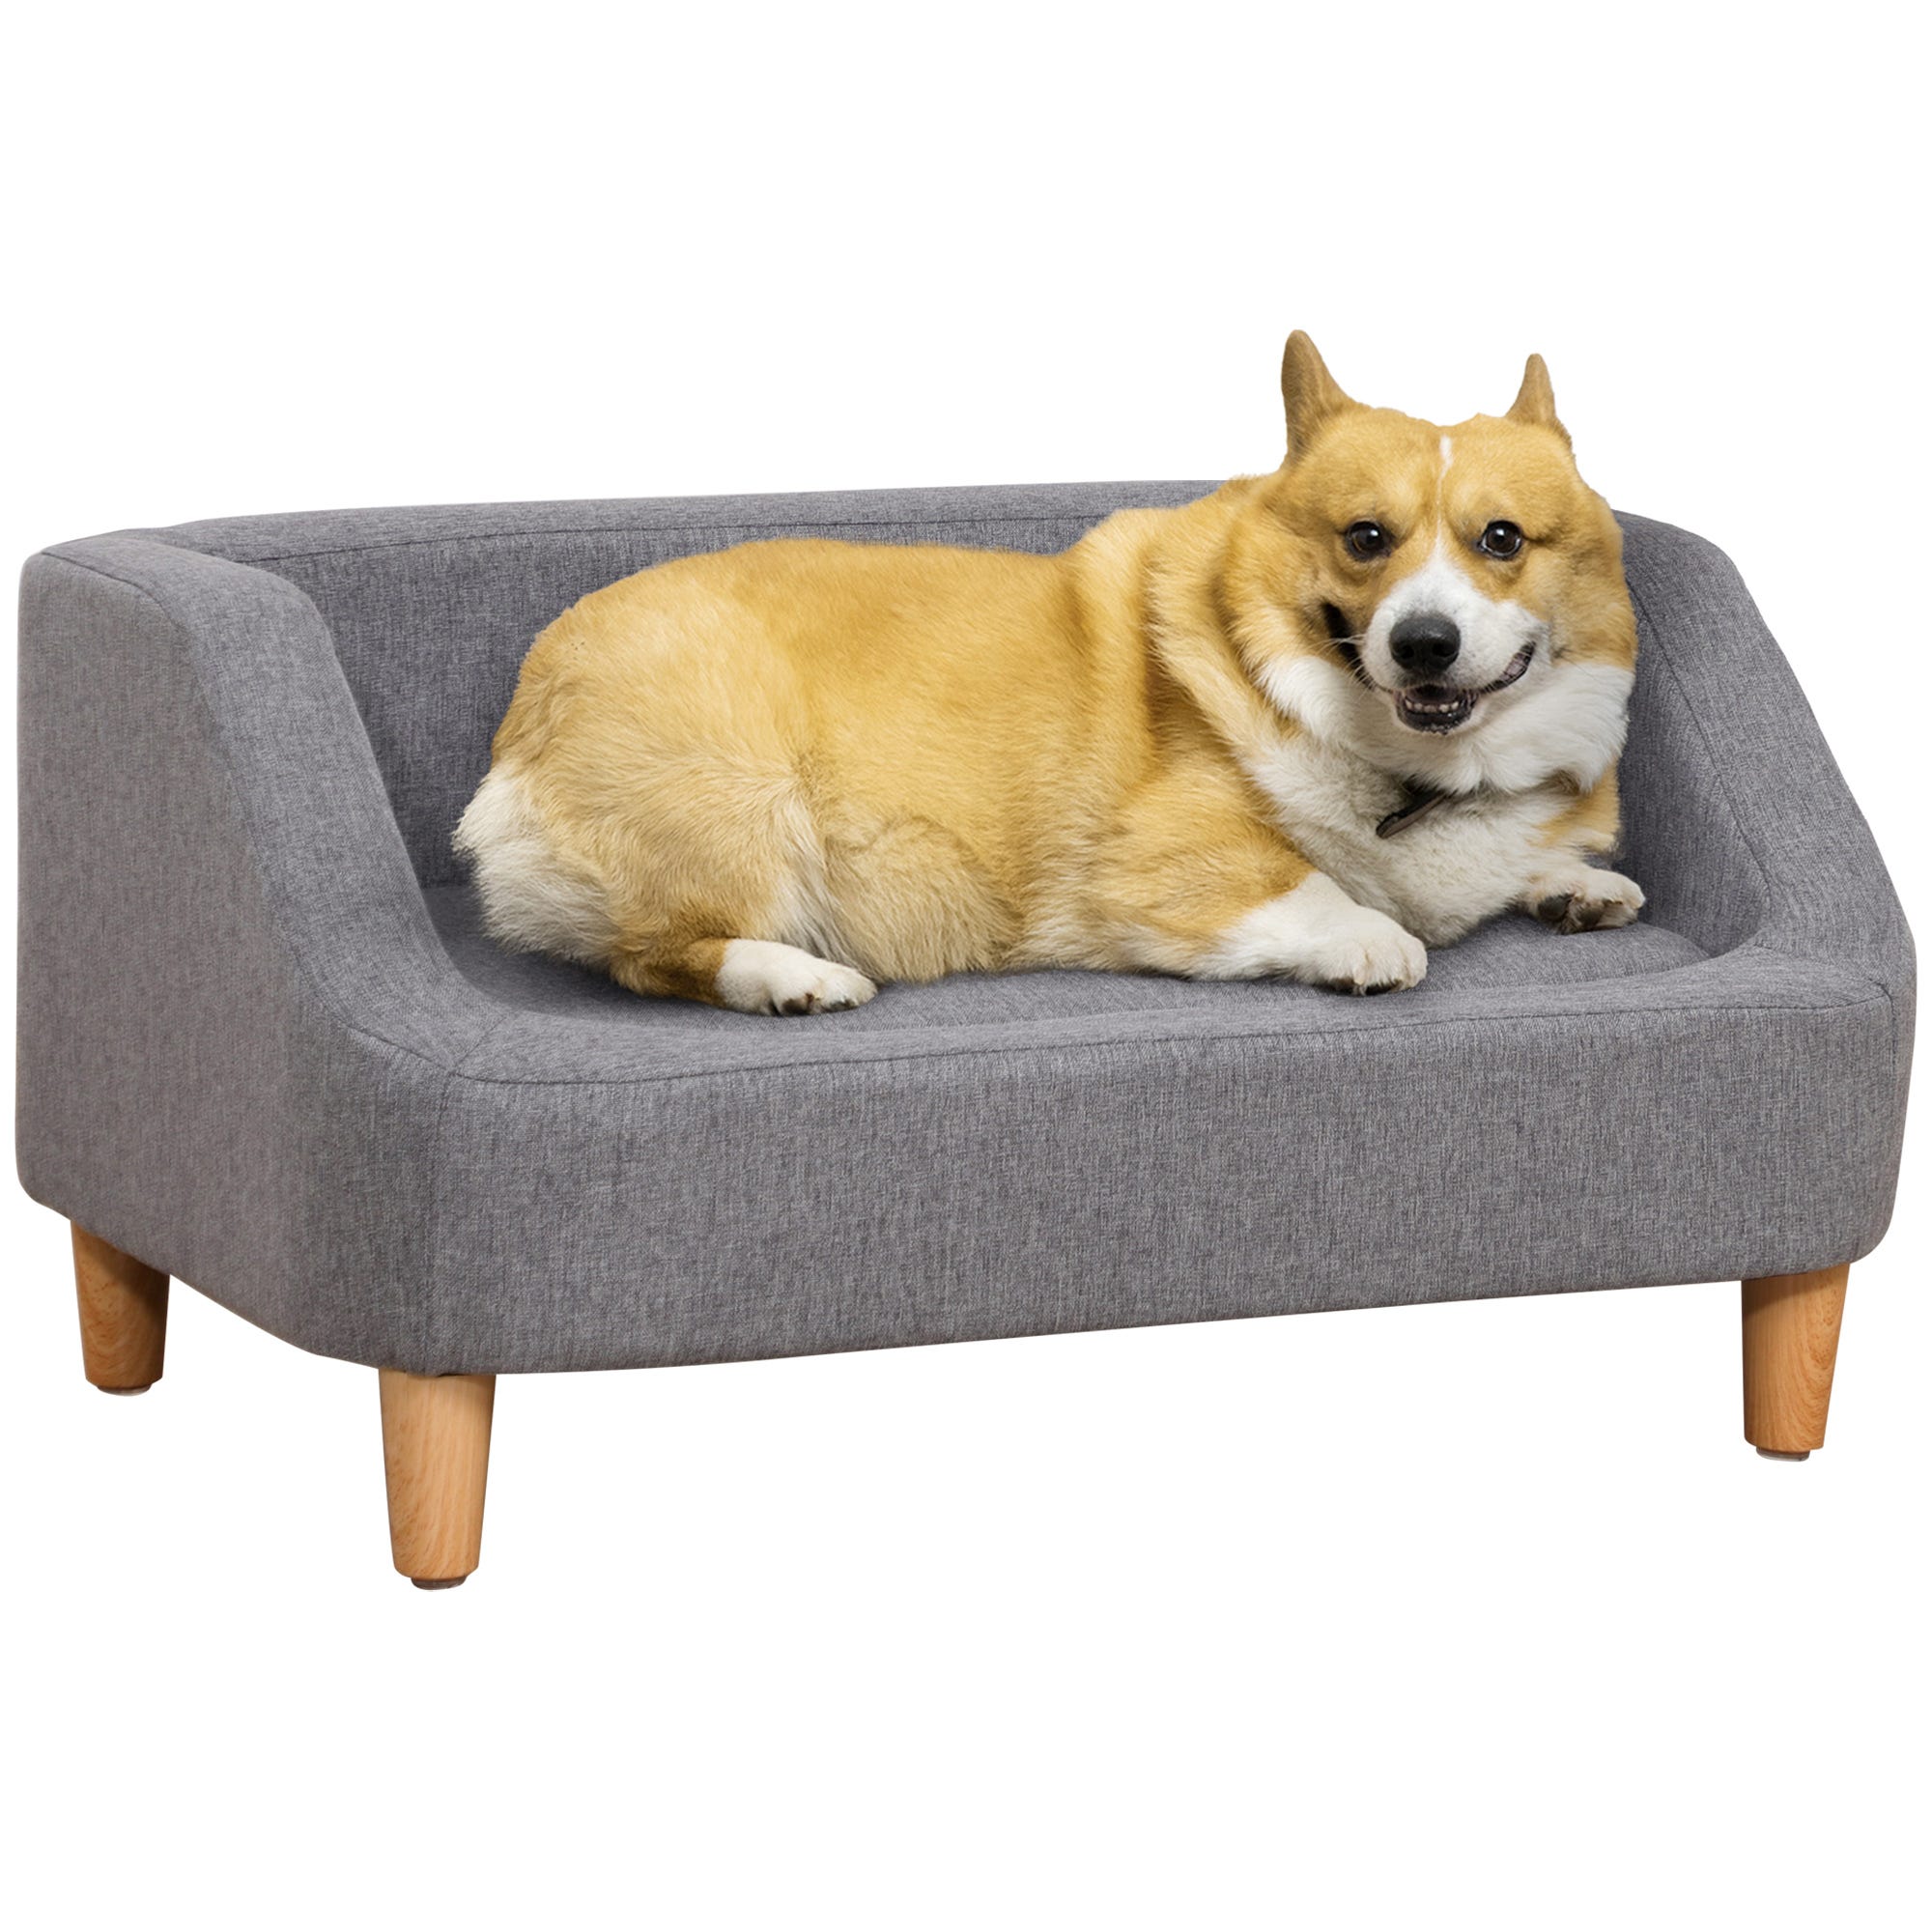 Canapé pour chien - Canapés et sofas pour chien